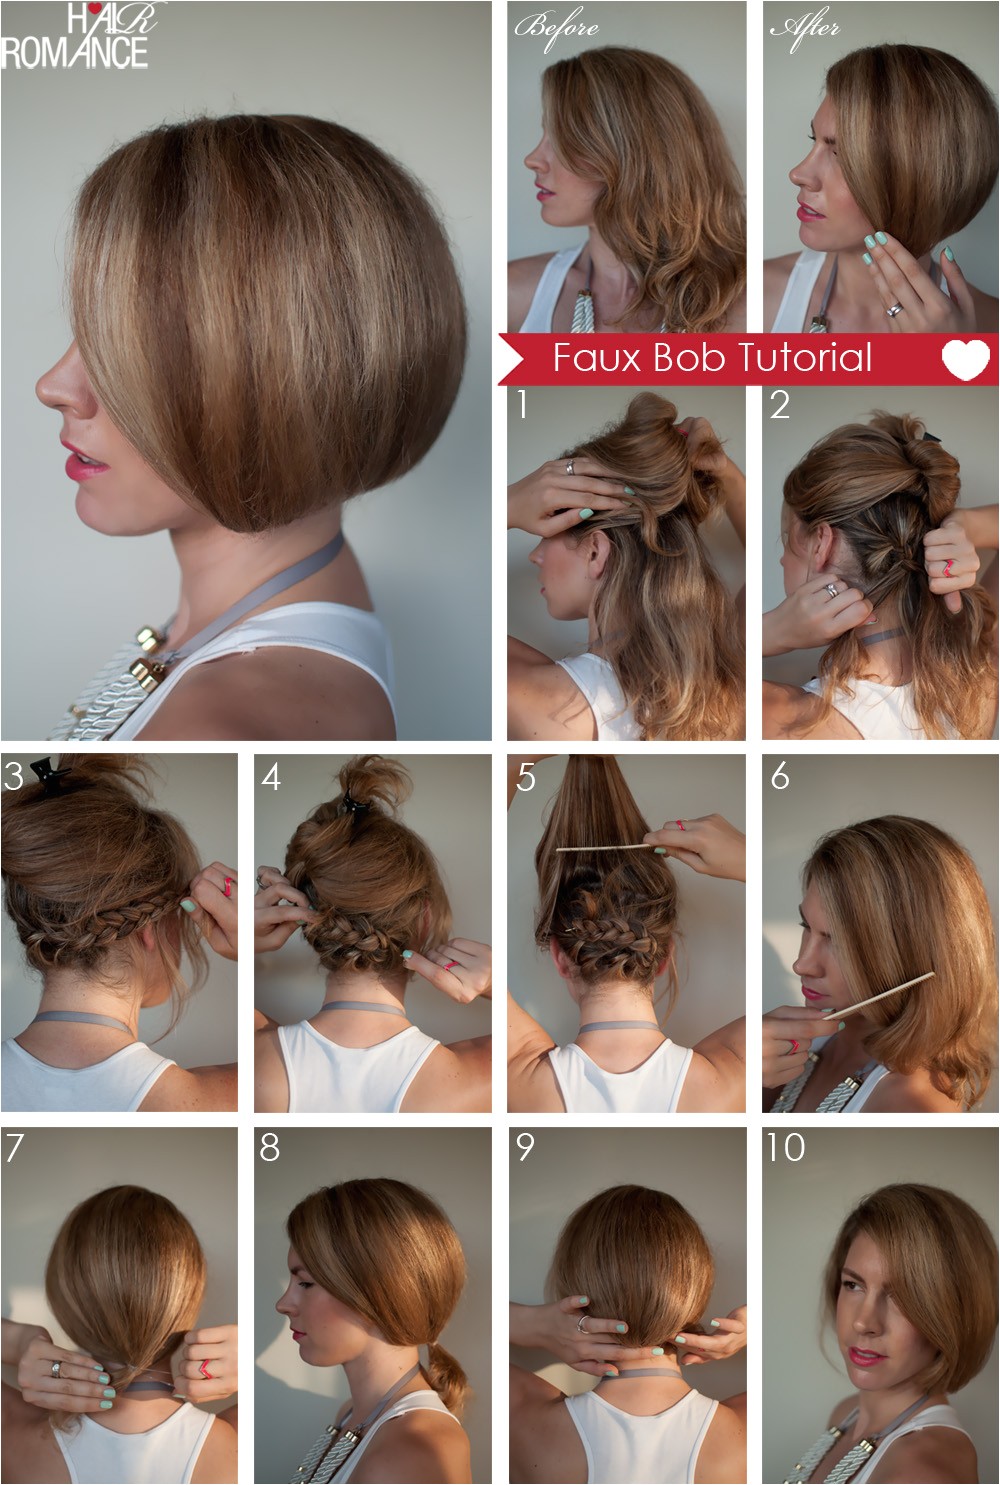 How to Do A Bob Haircut Step by Step Hair Tutorial How to Create A Faux Bob Hair Romance